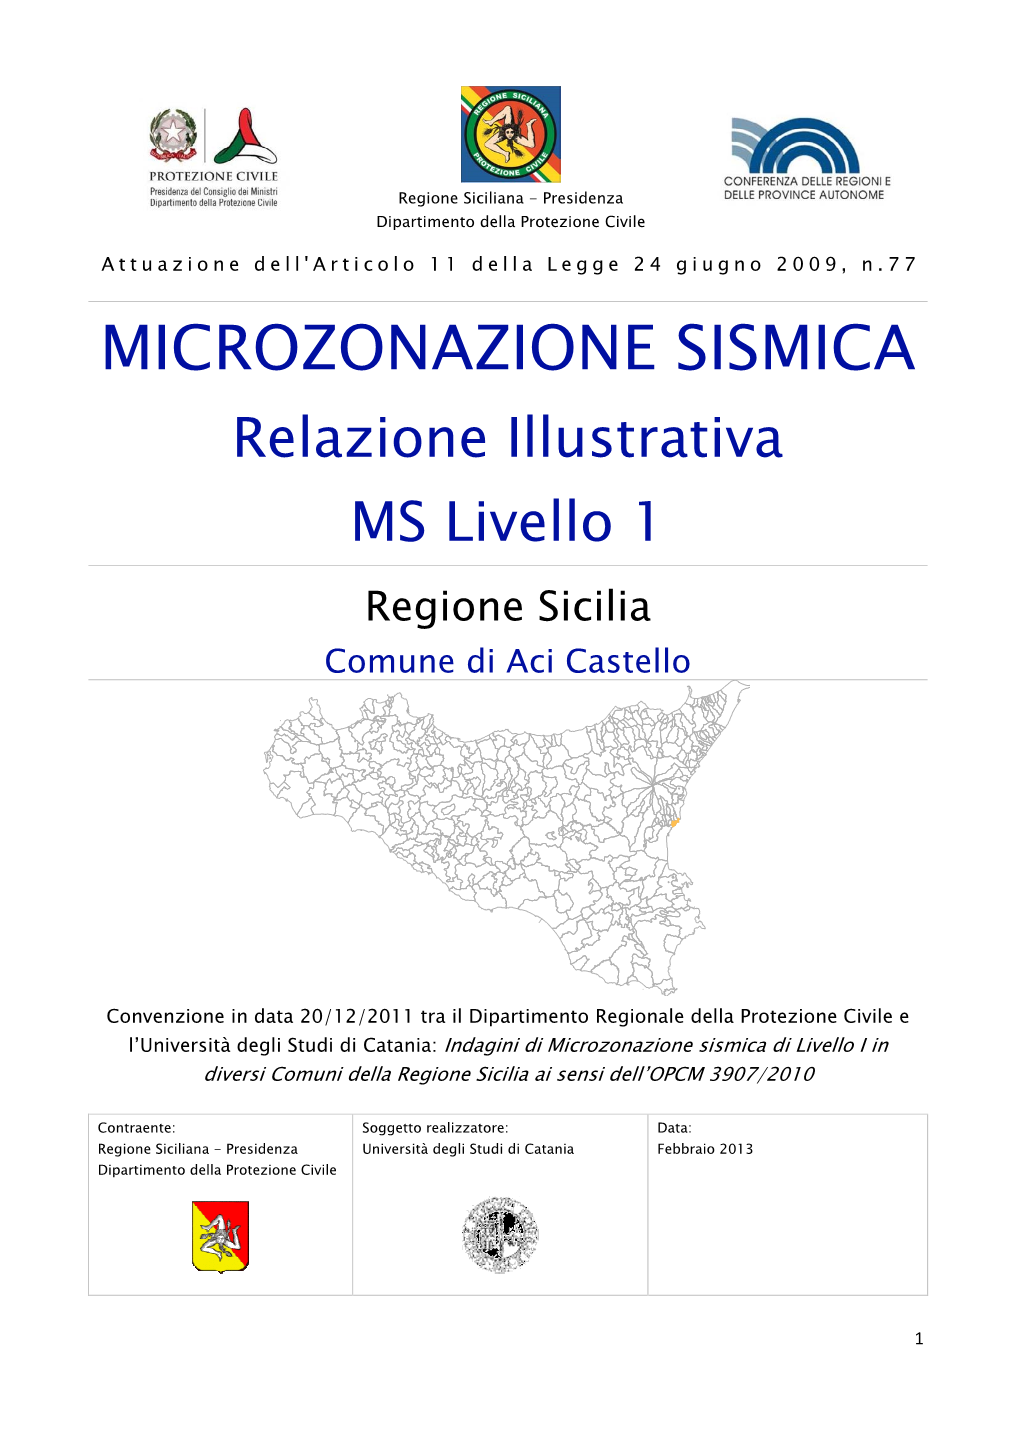 MICROZONAZIONE SISMICA Relazione Illustrativa MS Livello 1 Regione Sicilia Comune Di Aci Castello